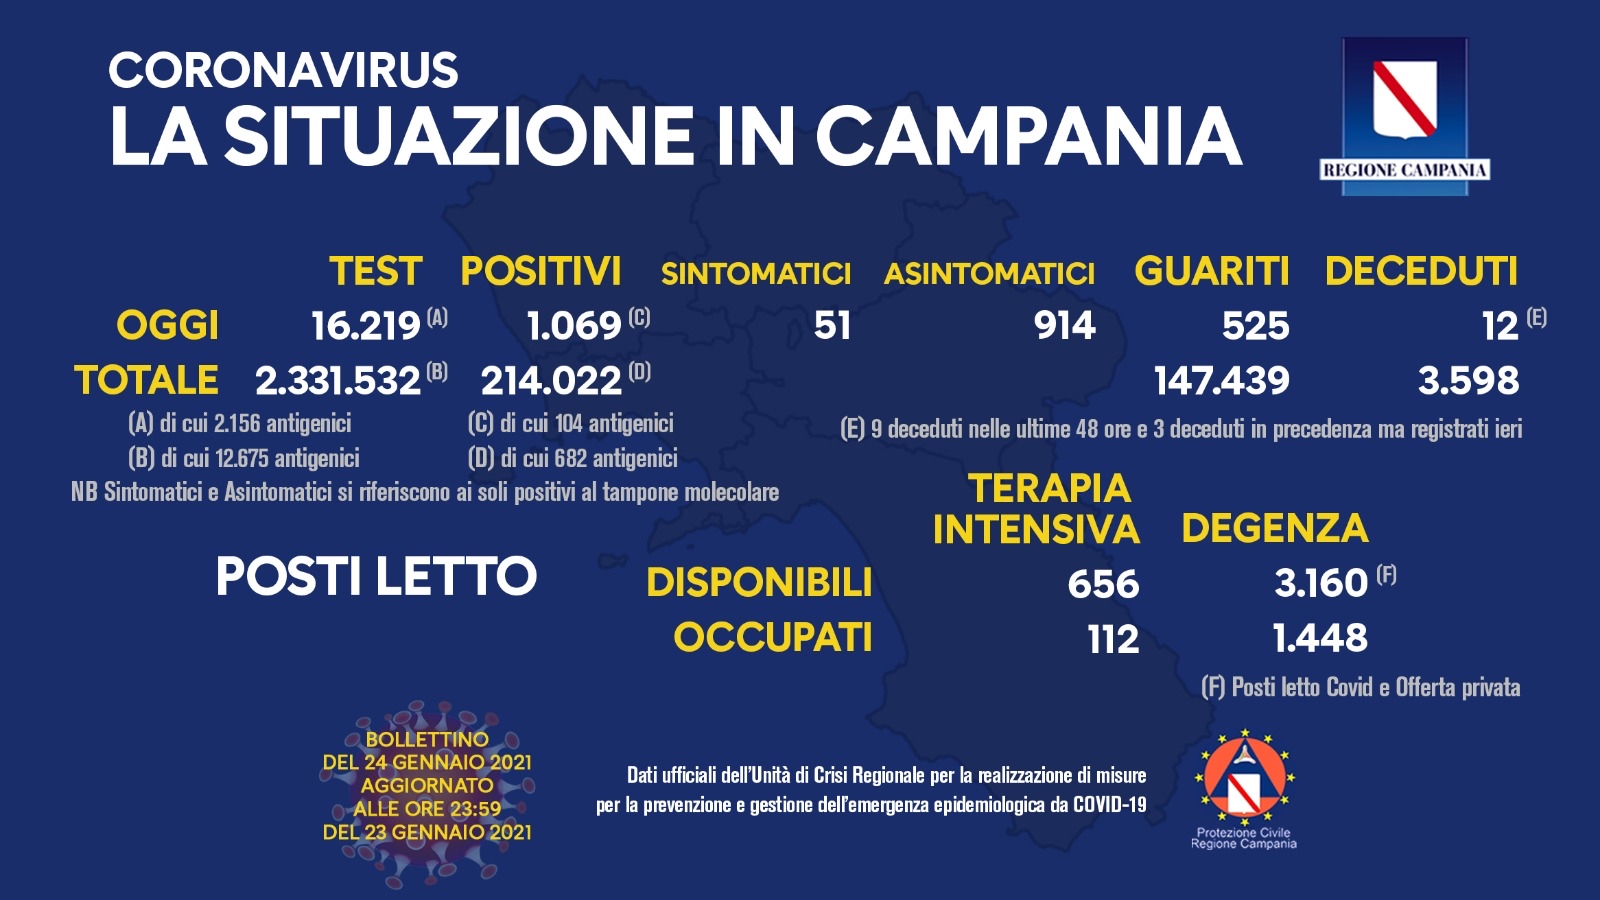 Bollettino Campania, 1.069 positivi su 16.219 tamponi con una percentuale del 6,6%